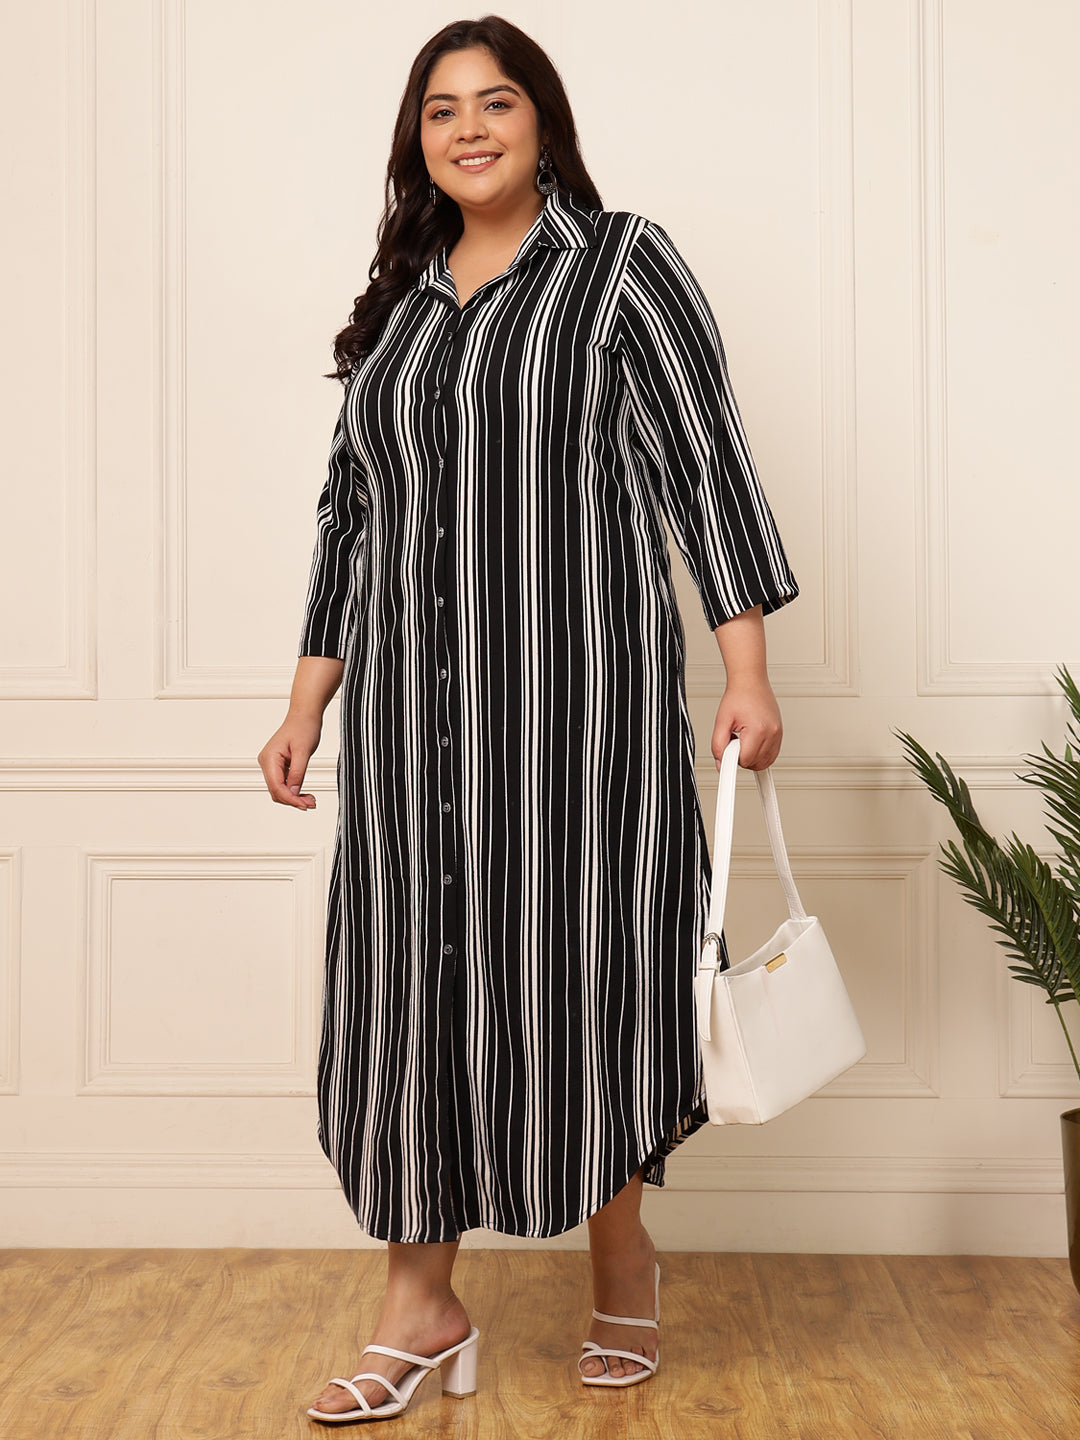 Women's Plus size black striped printed shirt